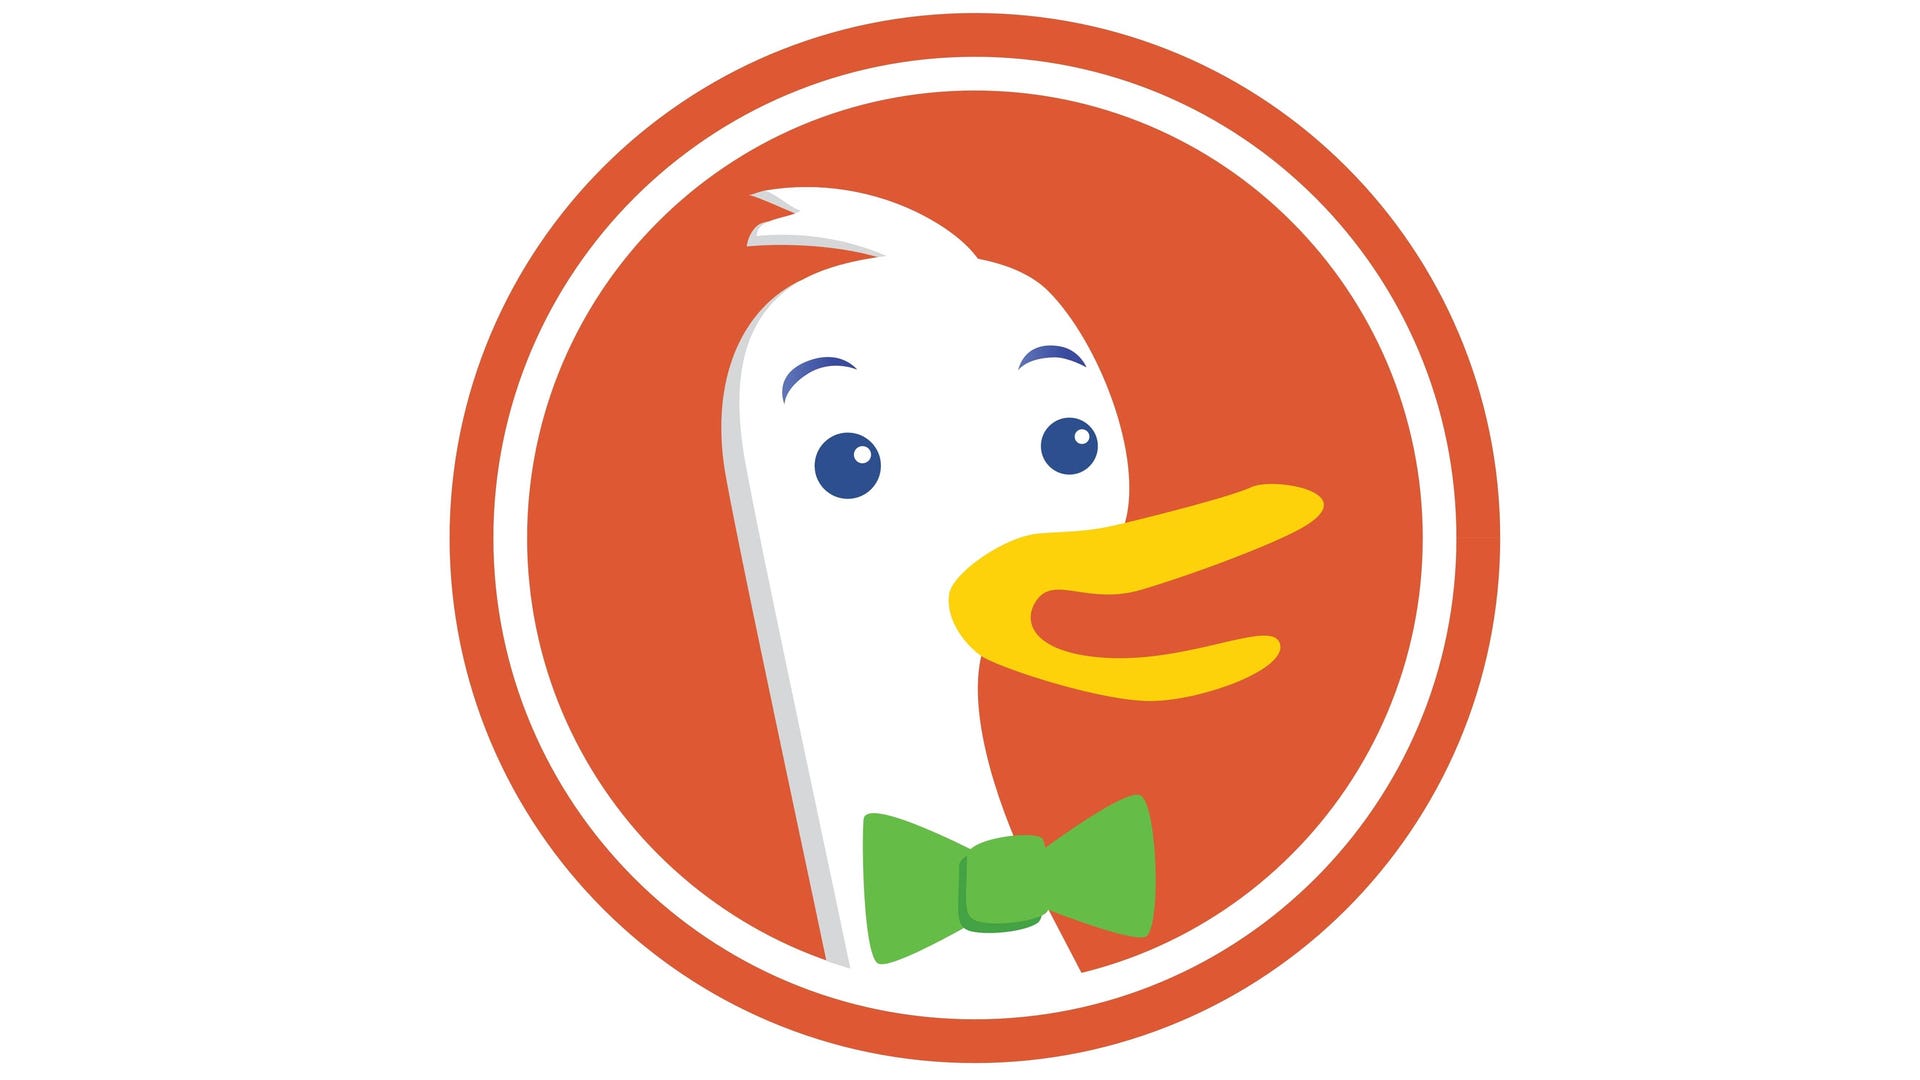 Le logo de DuckDuckGo sur un fond blanc